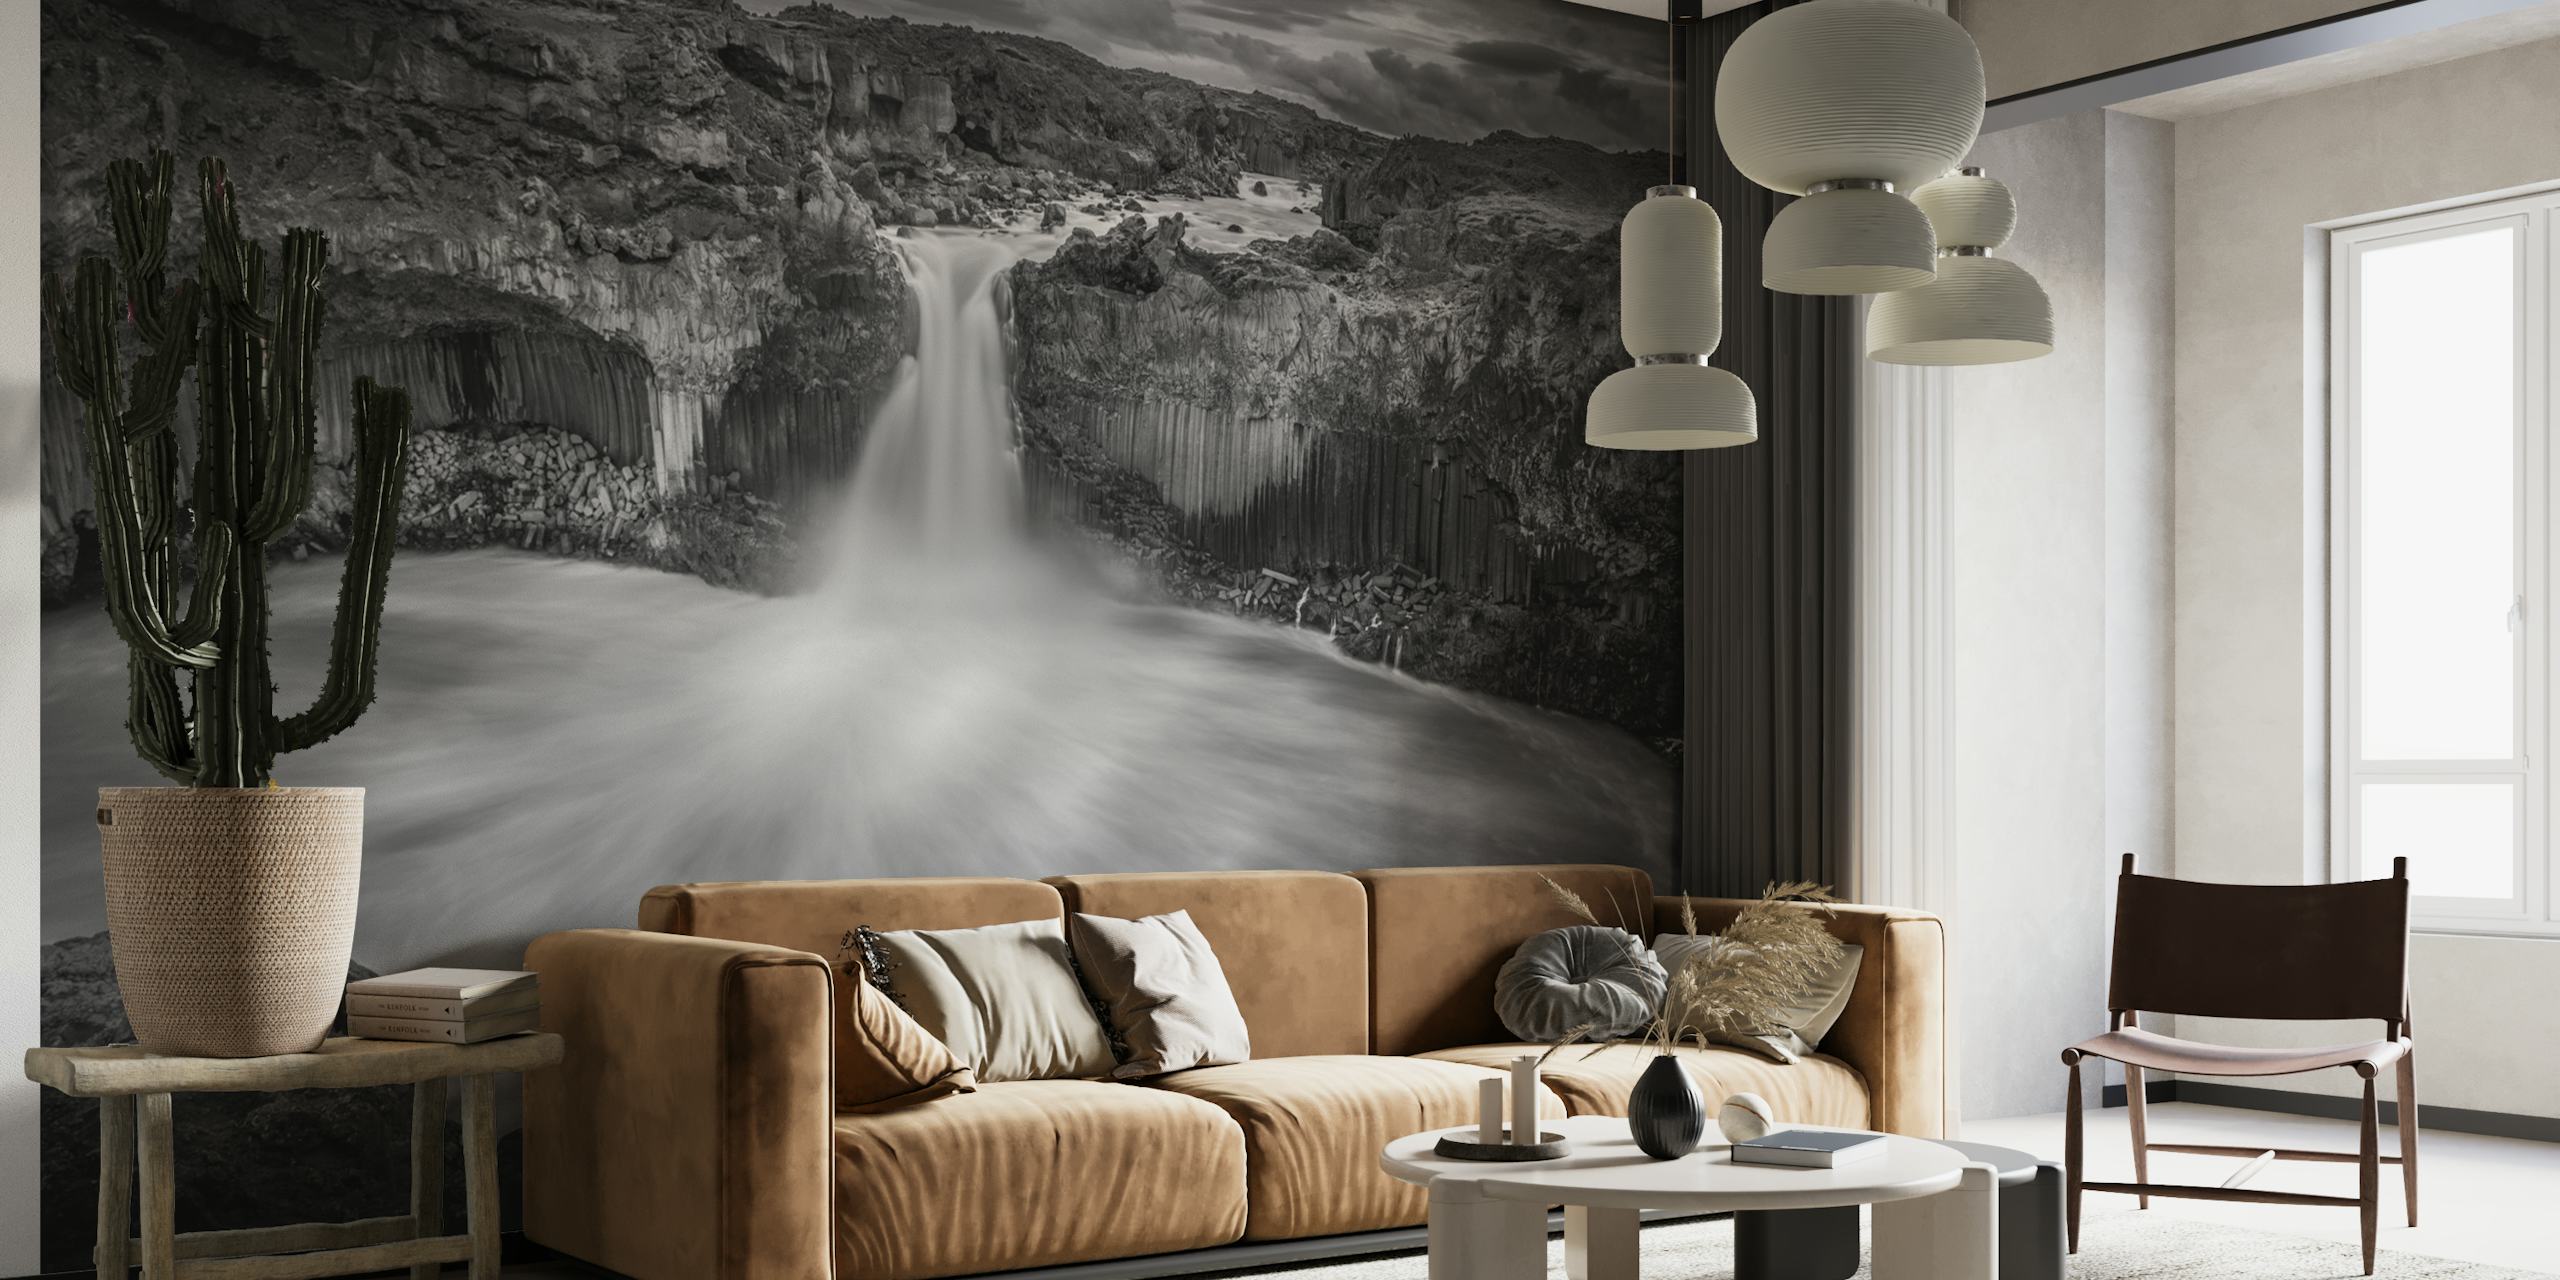 Czarno-biała fototapeta z islandzkim wodospadem przedstawiająca dramatyczne kontrasty i wspaniałość natury.